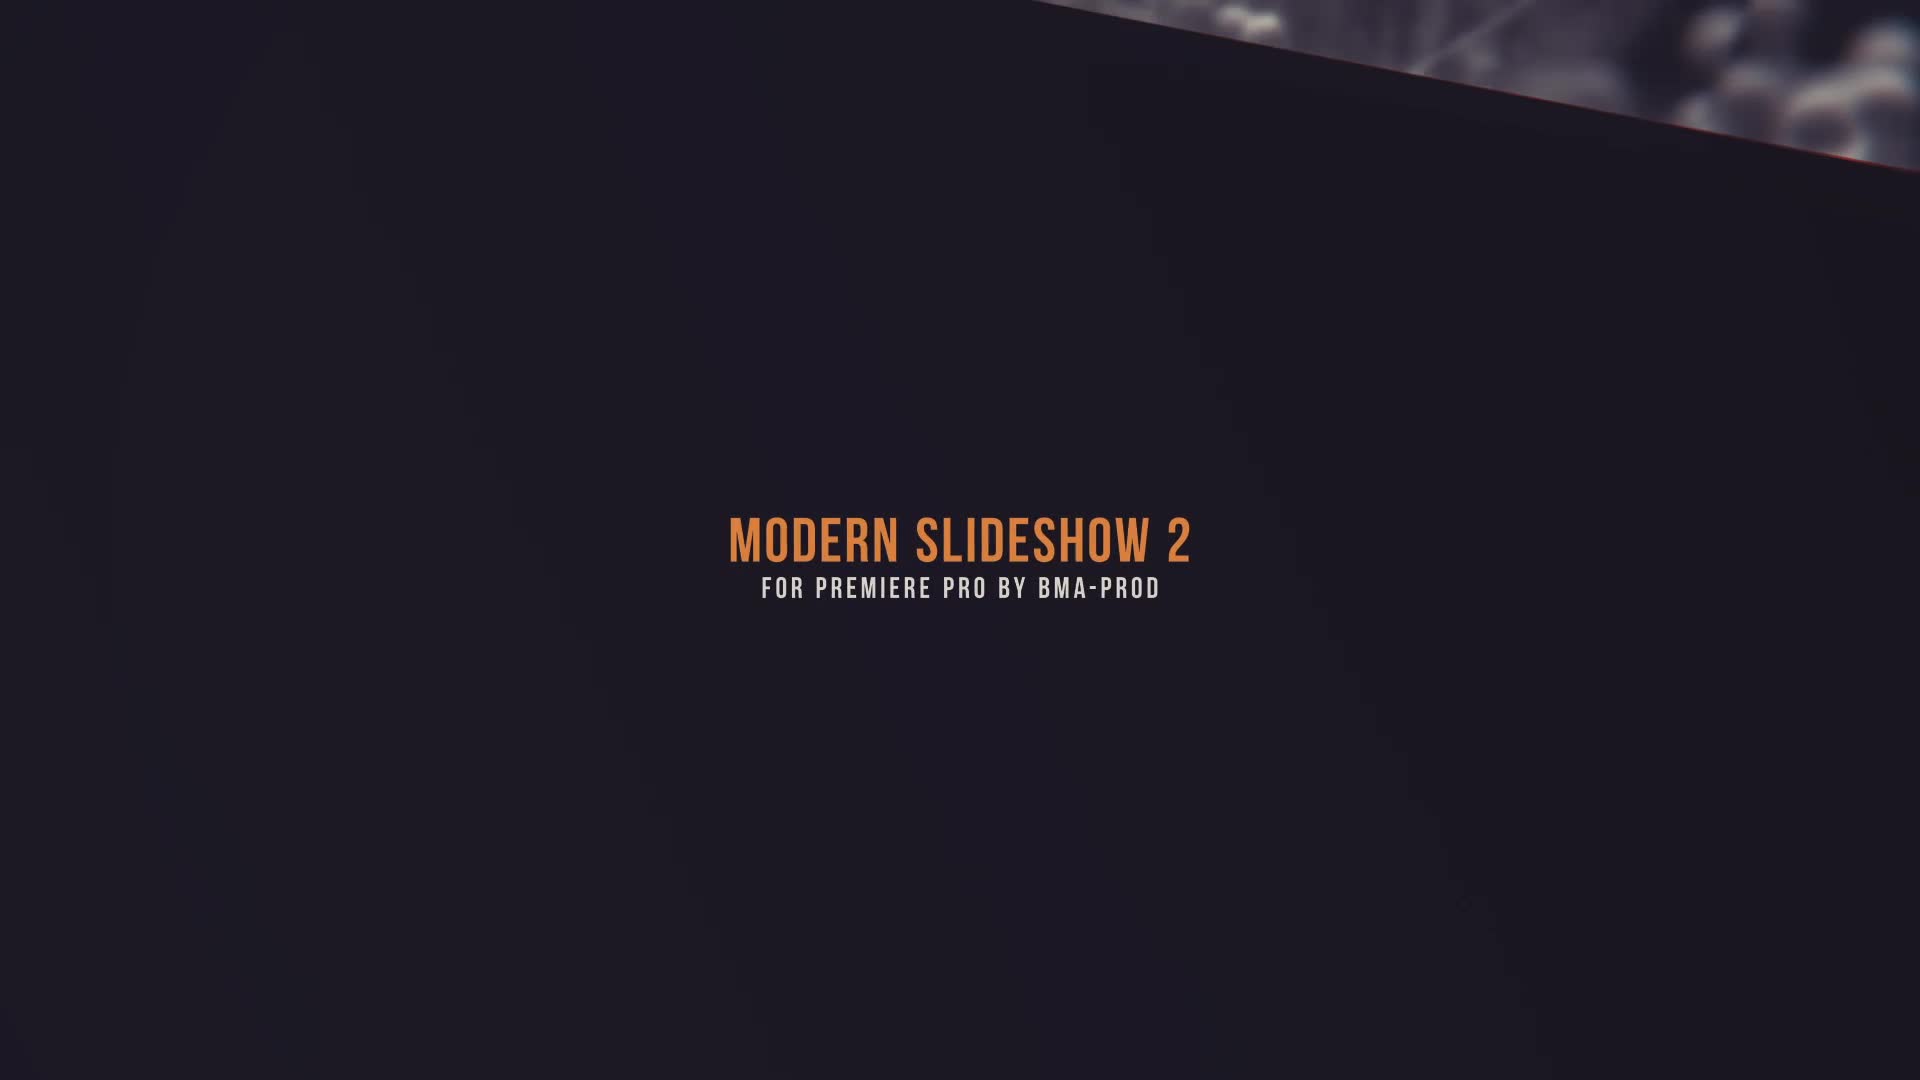 Modern Slideshow 2 For Premiere Pro Videohive 27393719 Premiere Pro Image 1